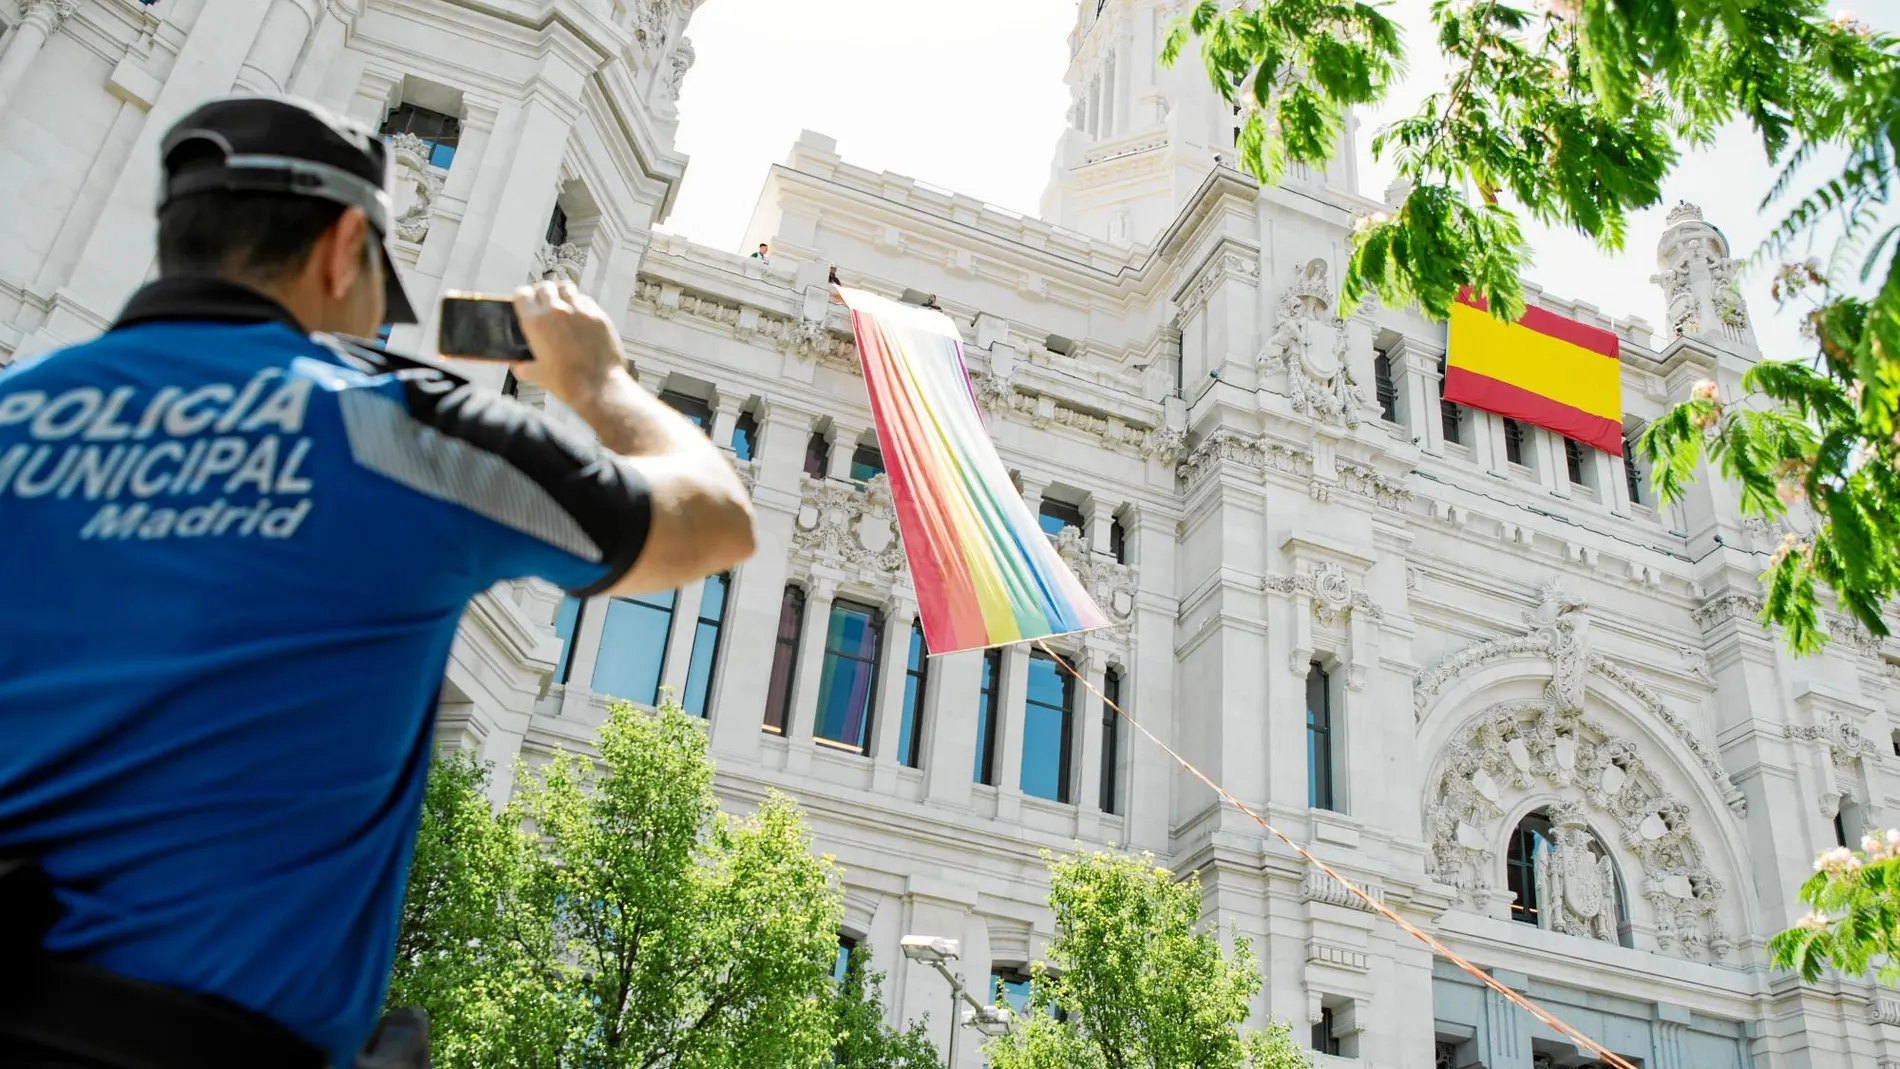 A diferencia de otros años, la bandera del Orgullo ha sido colocada a la izquierda de la fachada y no en el centro, donde ondea la española. Foto: David Jar